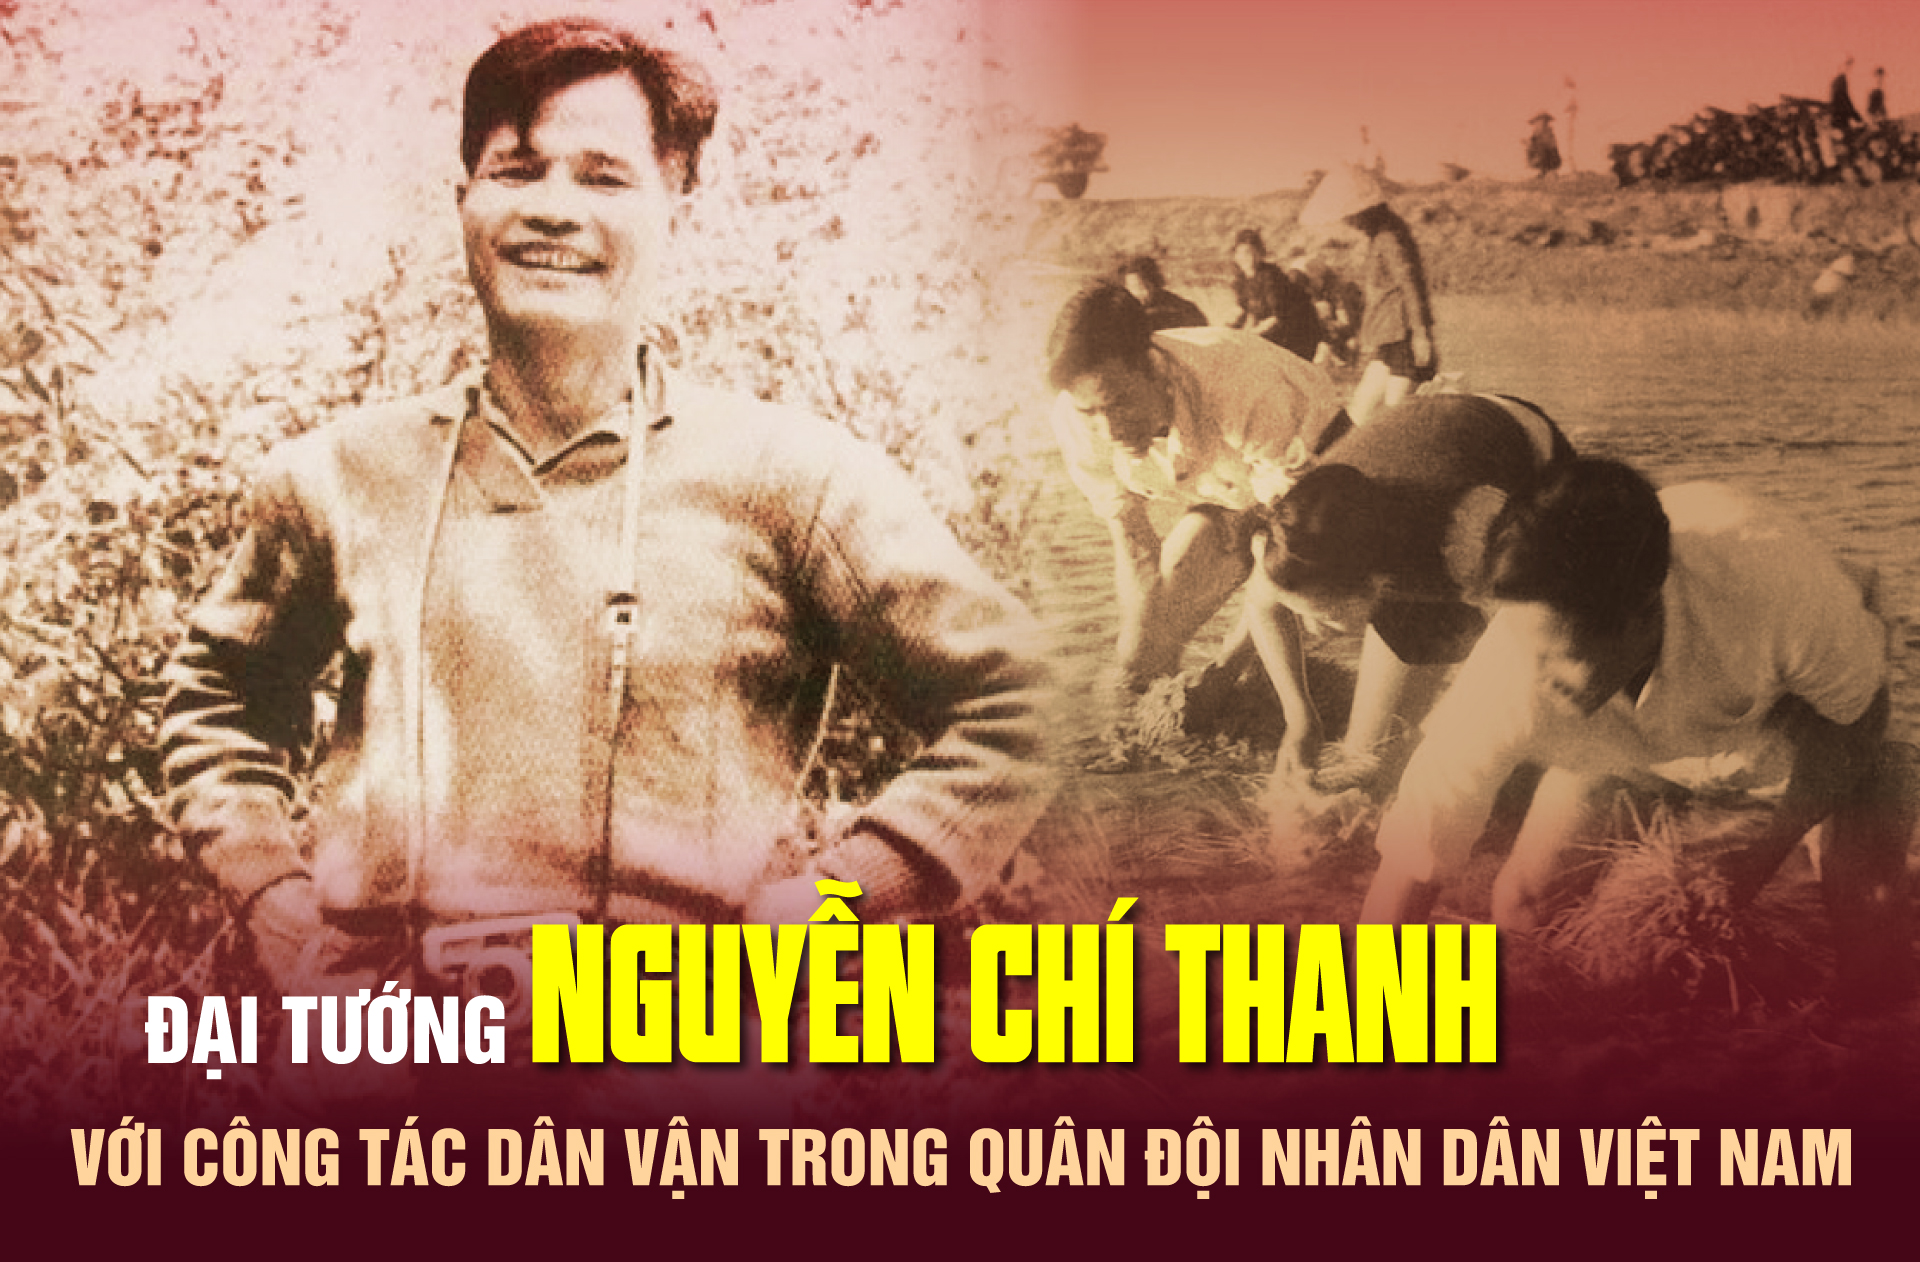 Đại tướng Nguyễn Chí Thanh với công tác dân vận trong Quân đội nhân dân Việt Nam